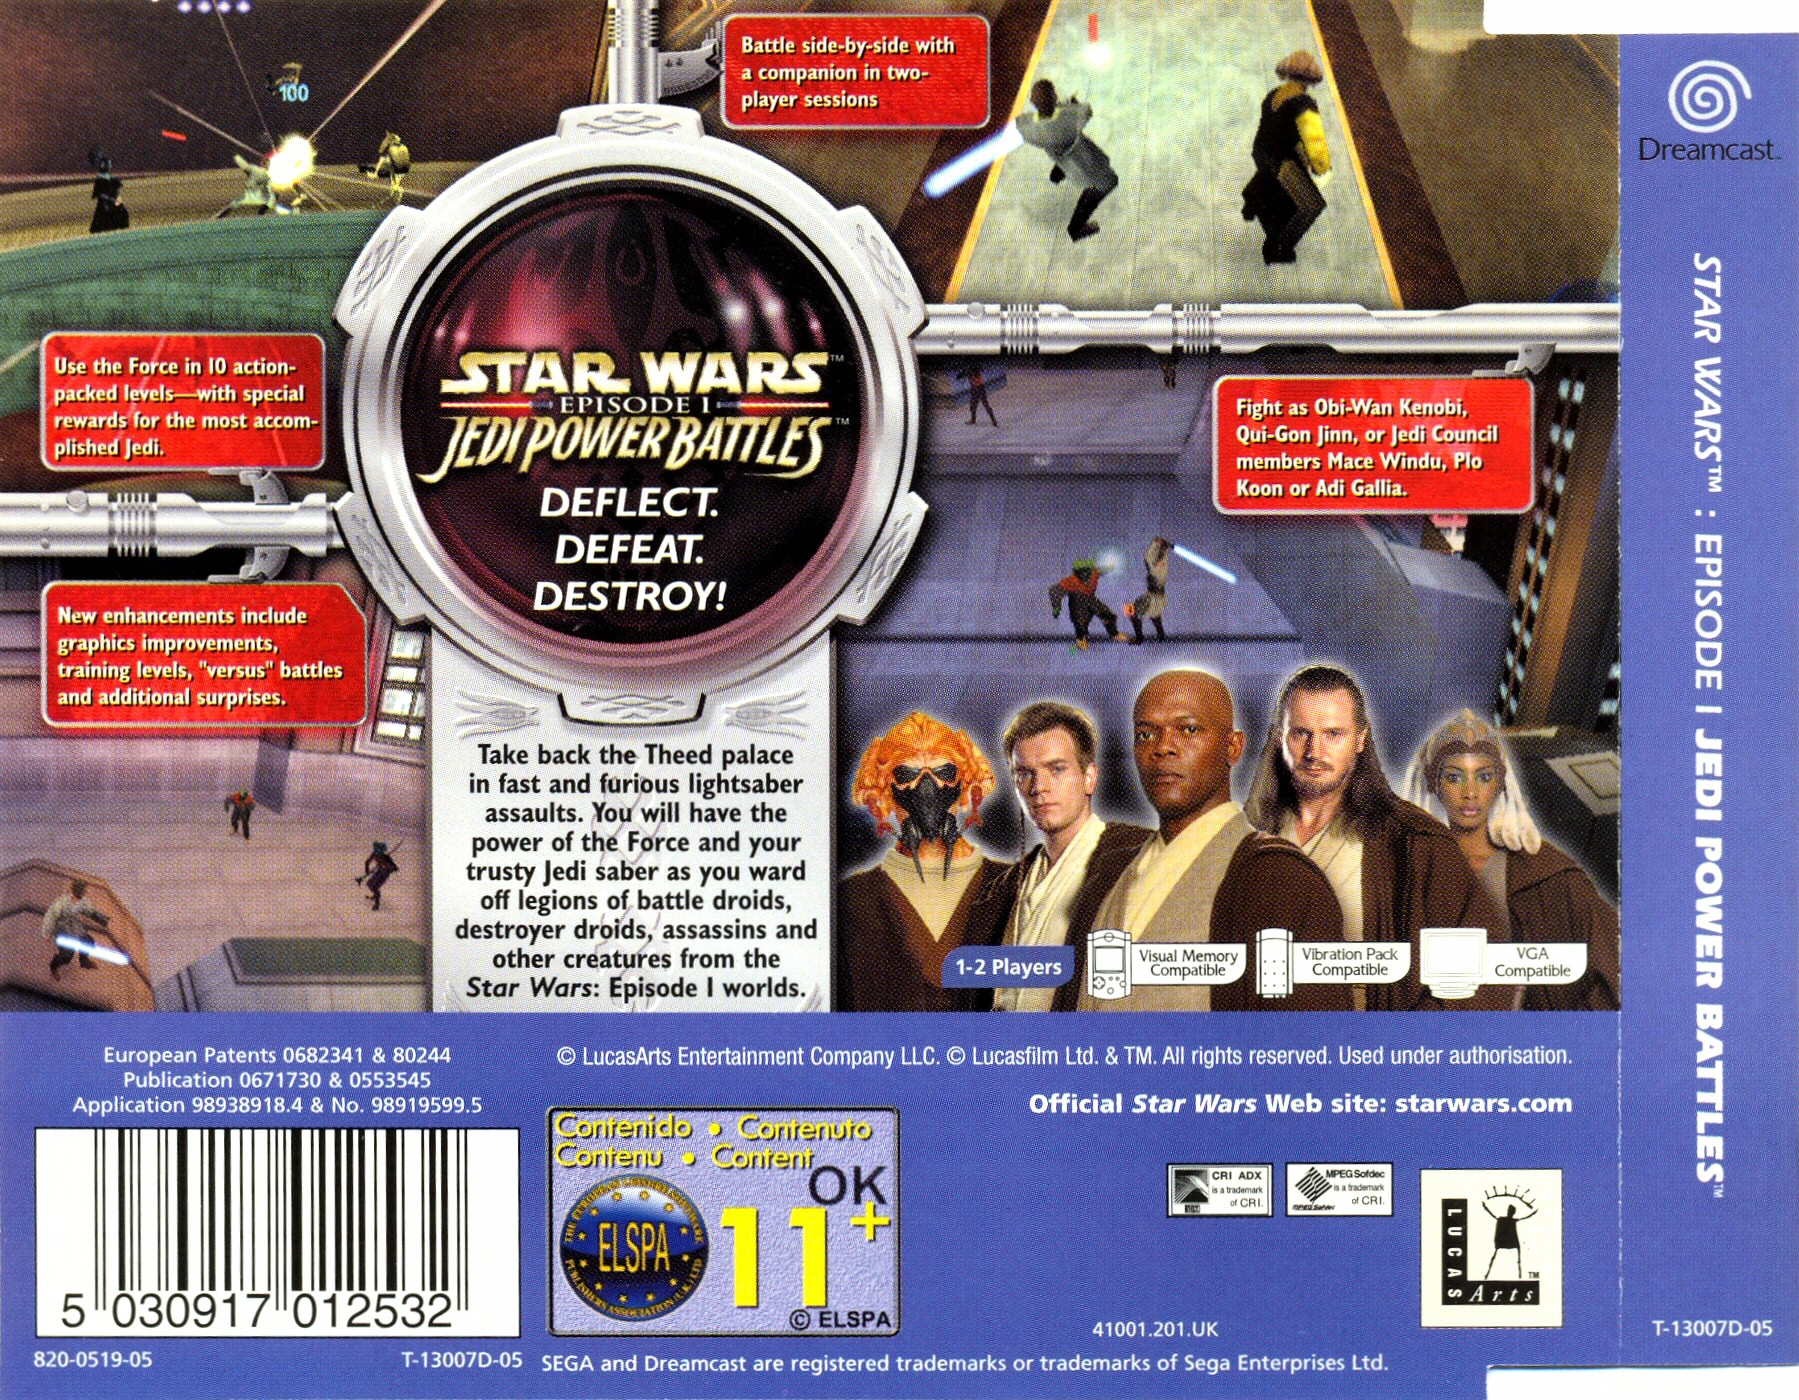 Star wars episode i jedi power. Star Wars Episode 1 Jedi Power Battles. Sega Dreamcast Star Wars Episode 1. Star Wars Episode i Jedi Power Battles. Star Wars Jedi Power Battles ps1.